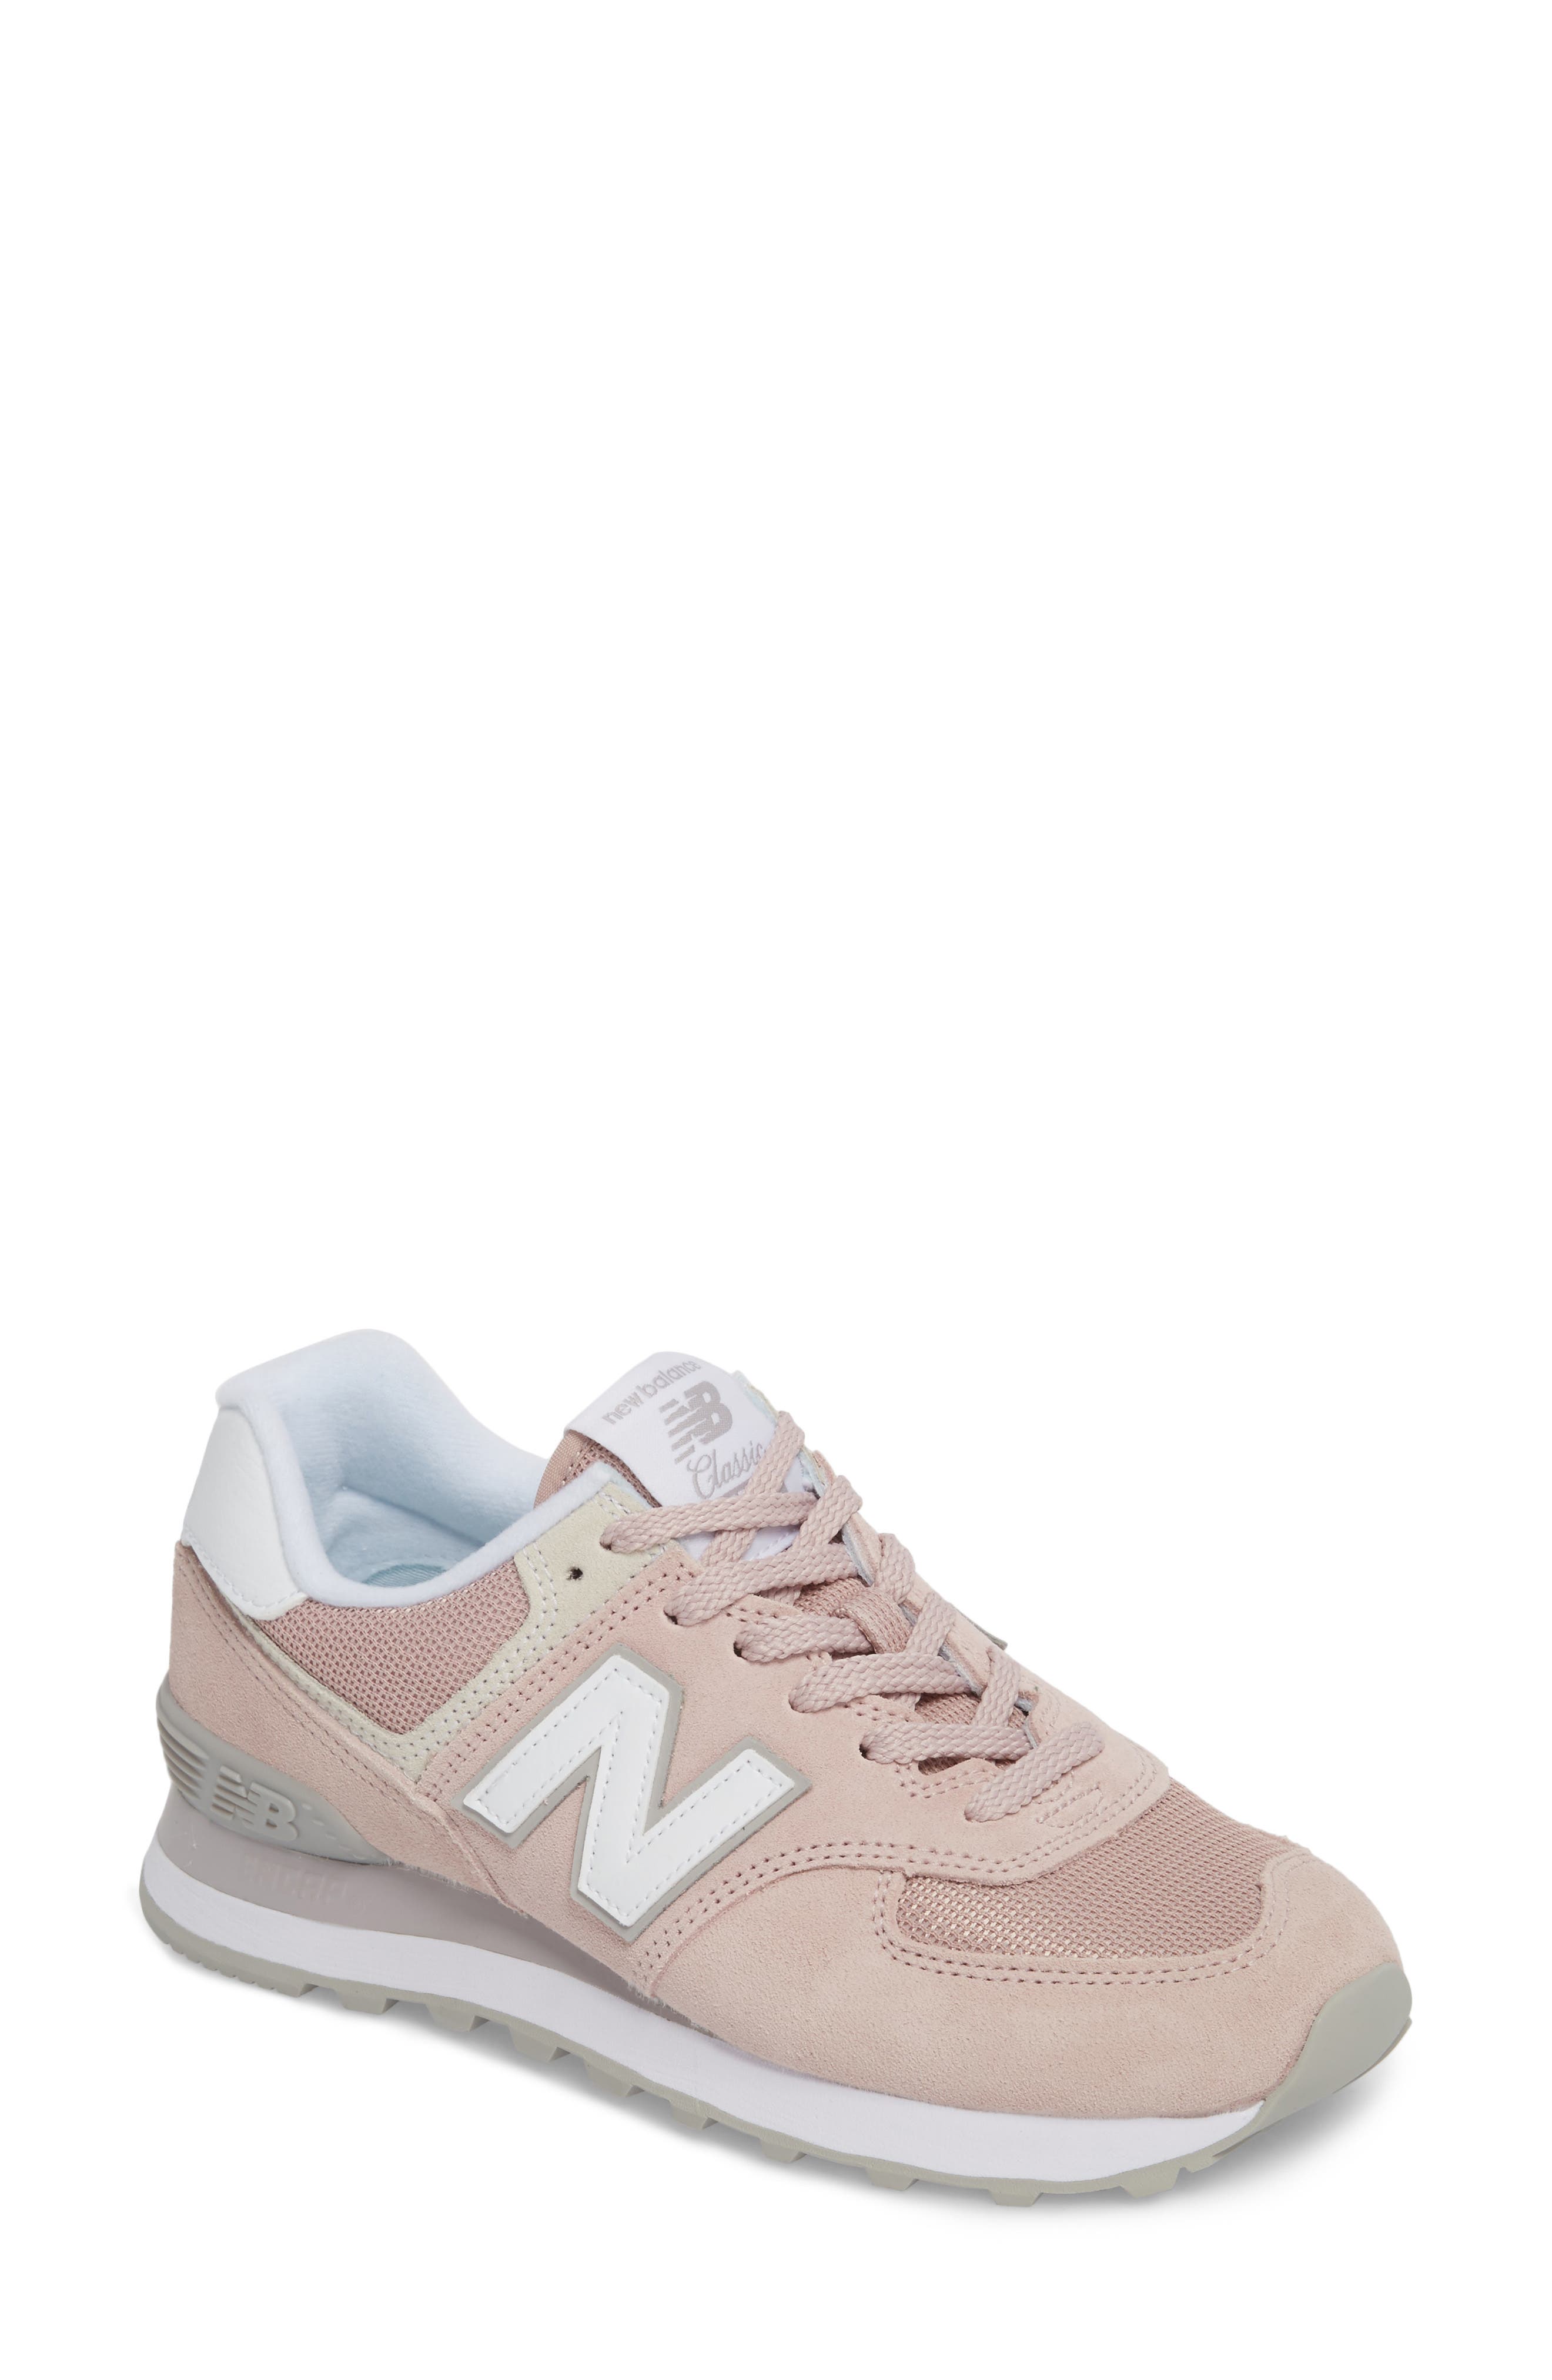 New Balance \u0027574\u0027 Sneaker (Women)